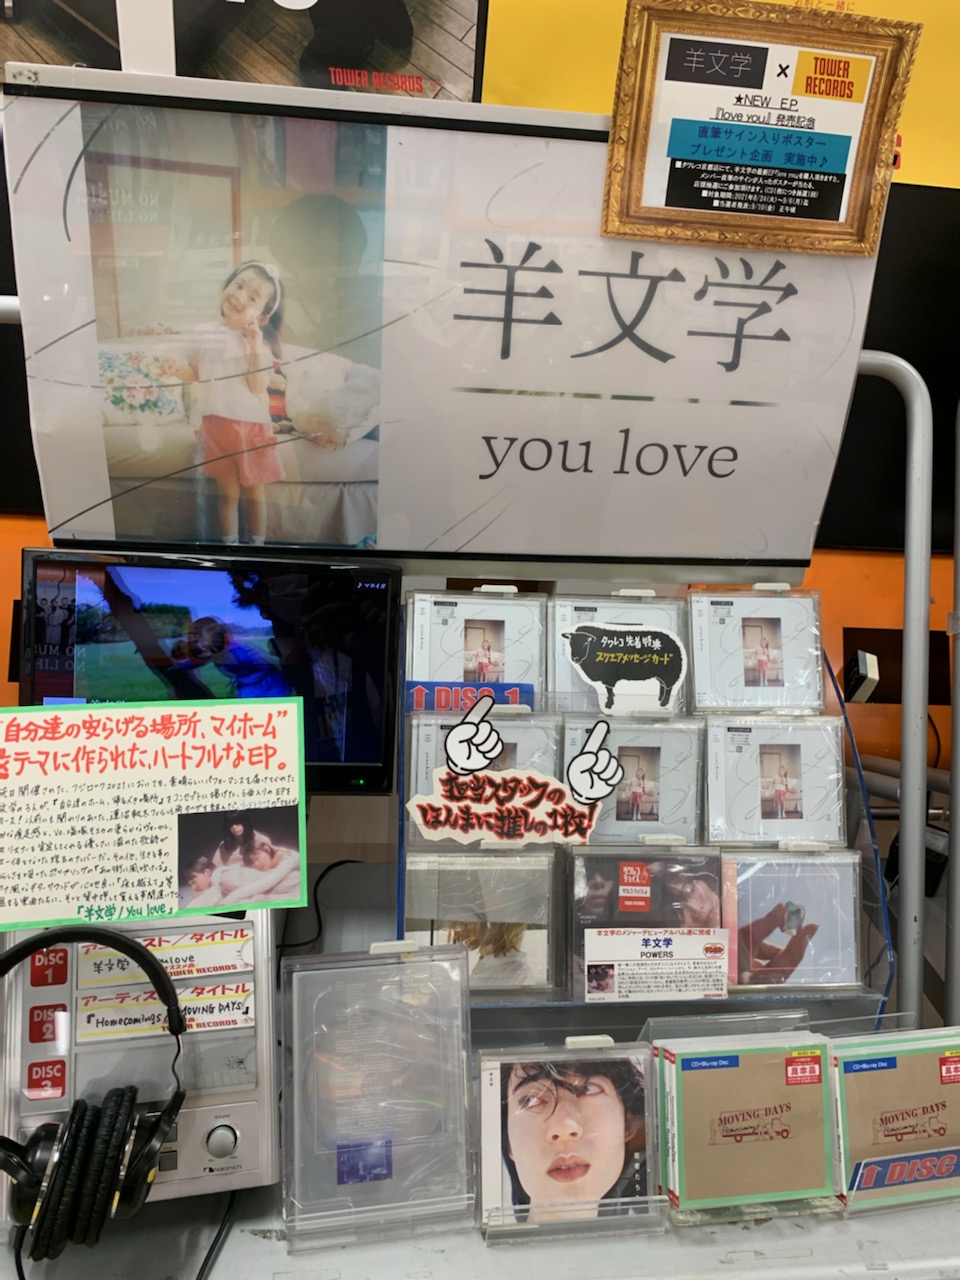 タワーレコード京都店 on X: "【#羊文学】 メジャーデビュー作『POWERS